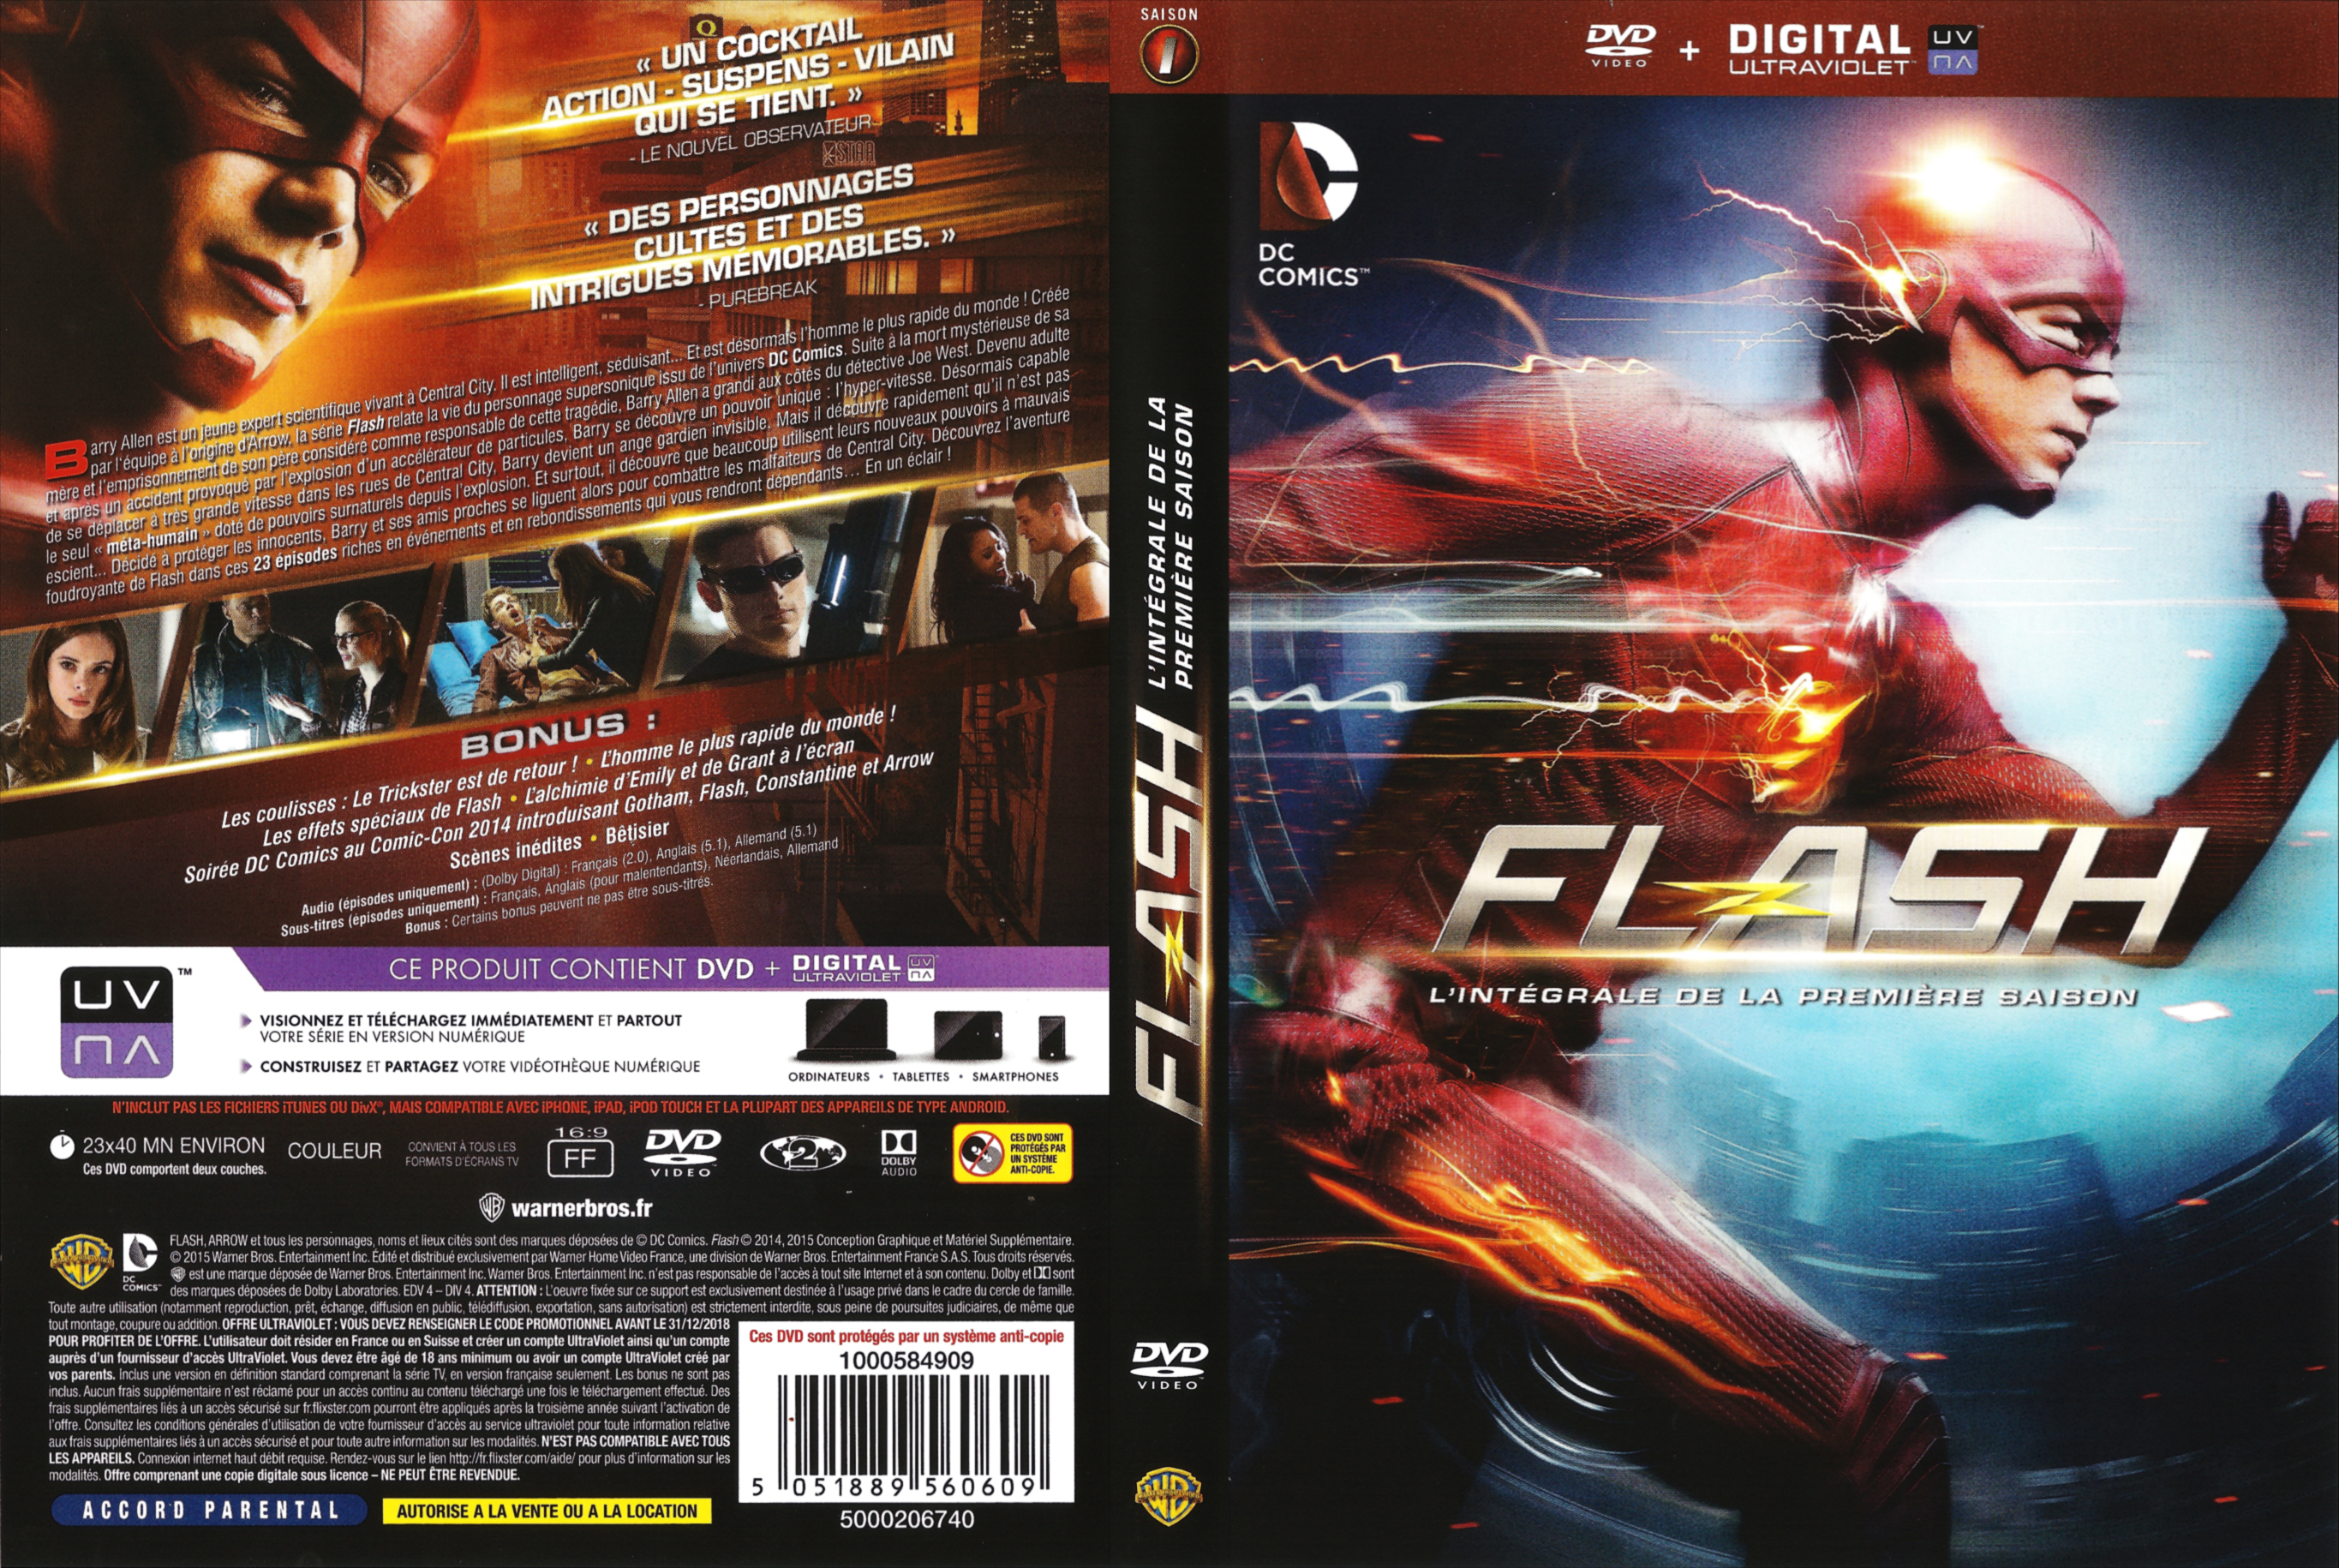 Jaquette DVD The Flash Saison 1